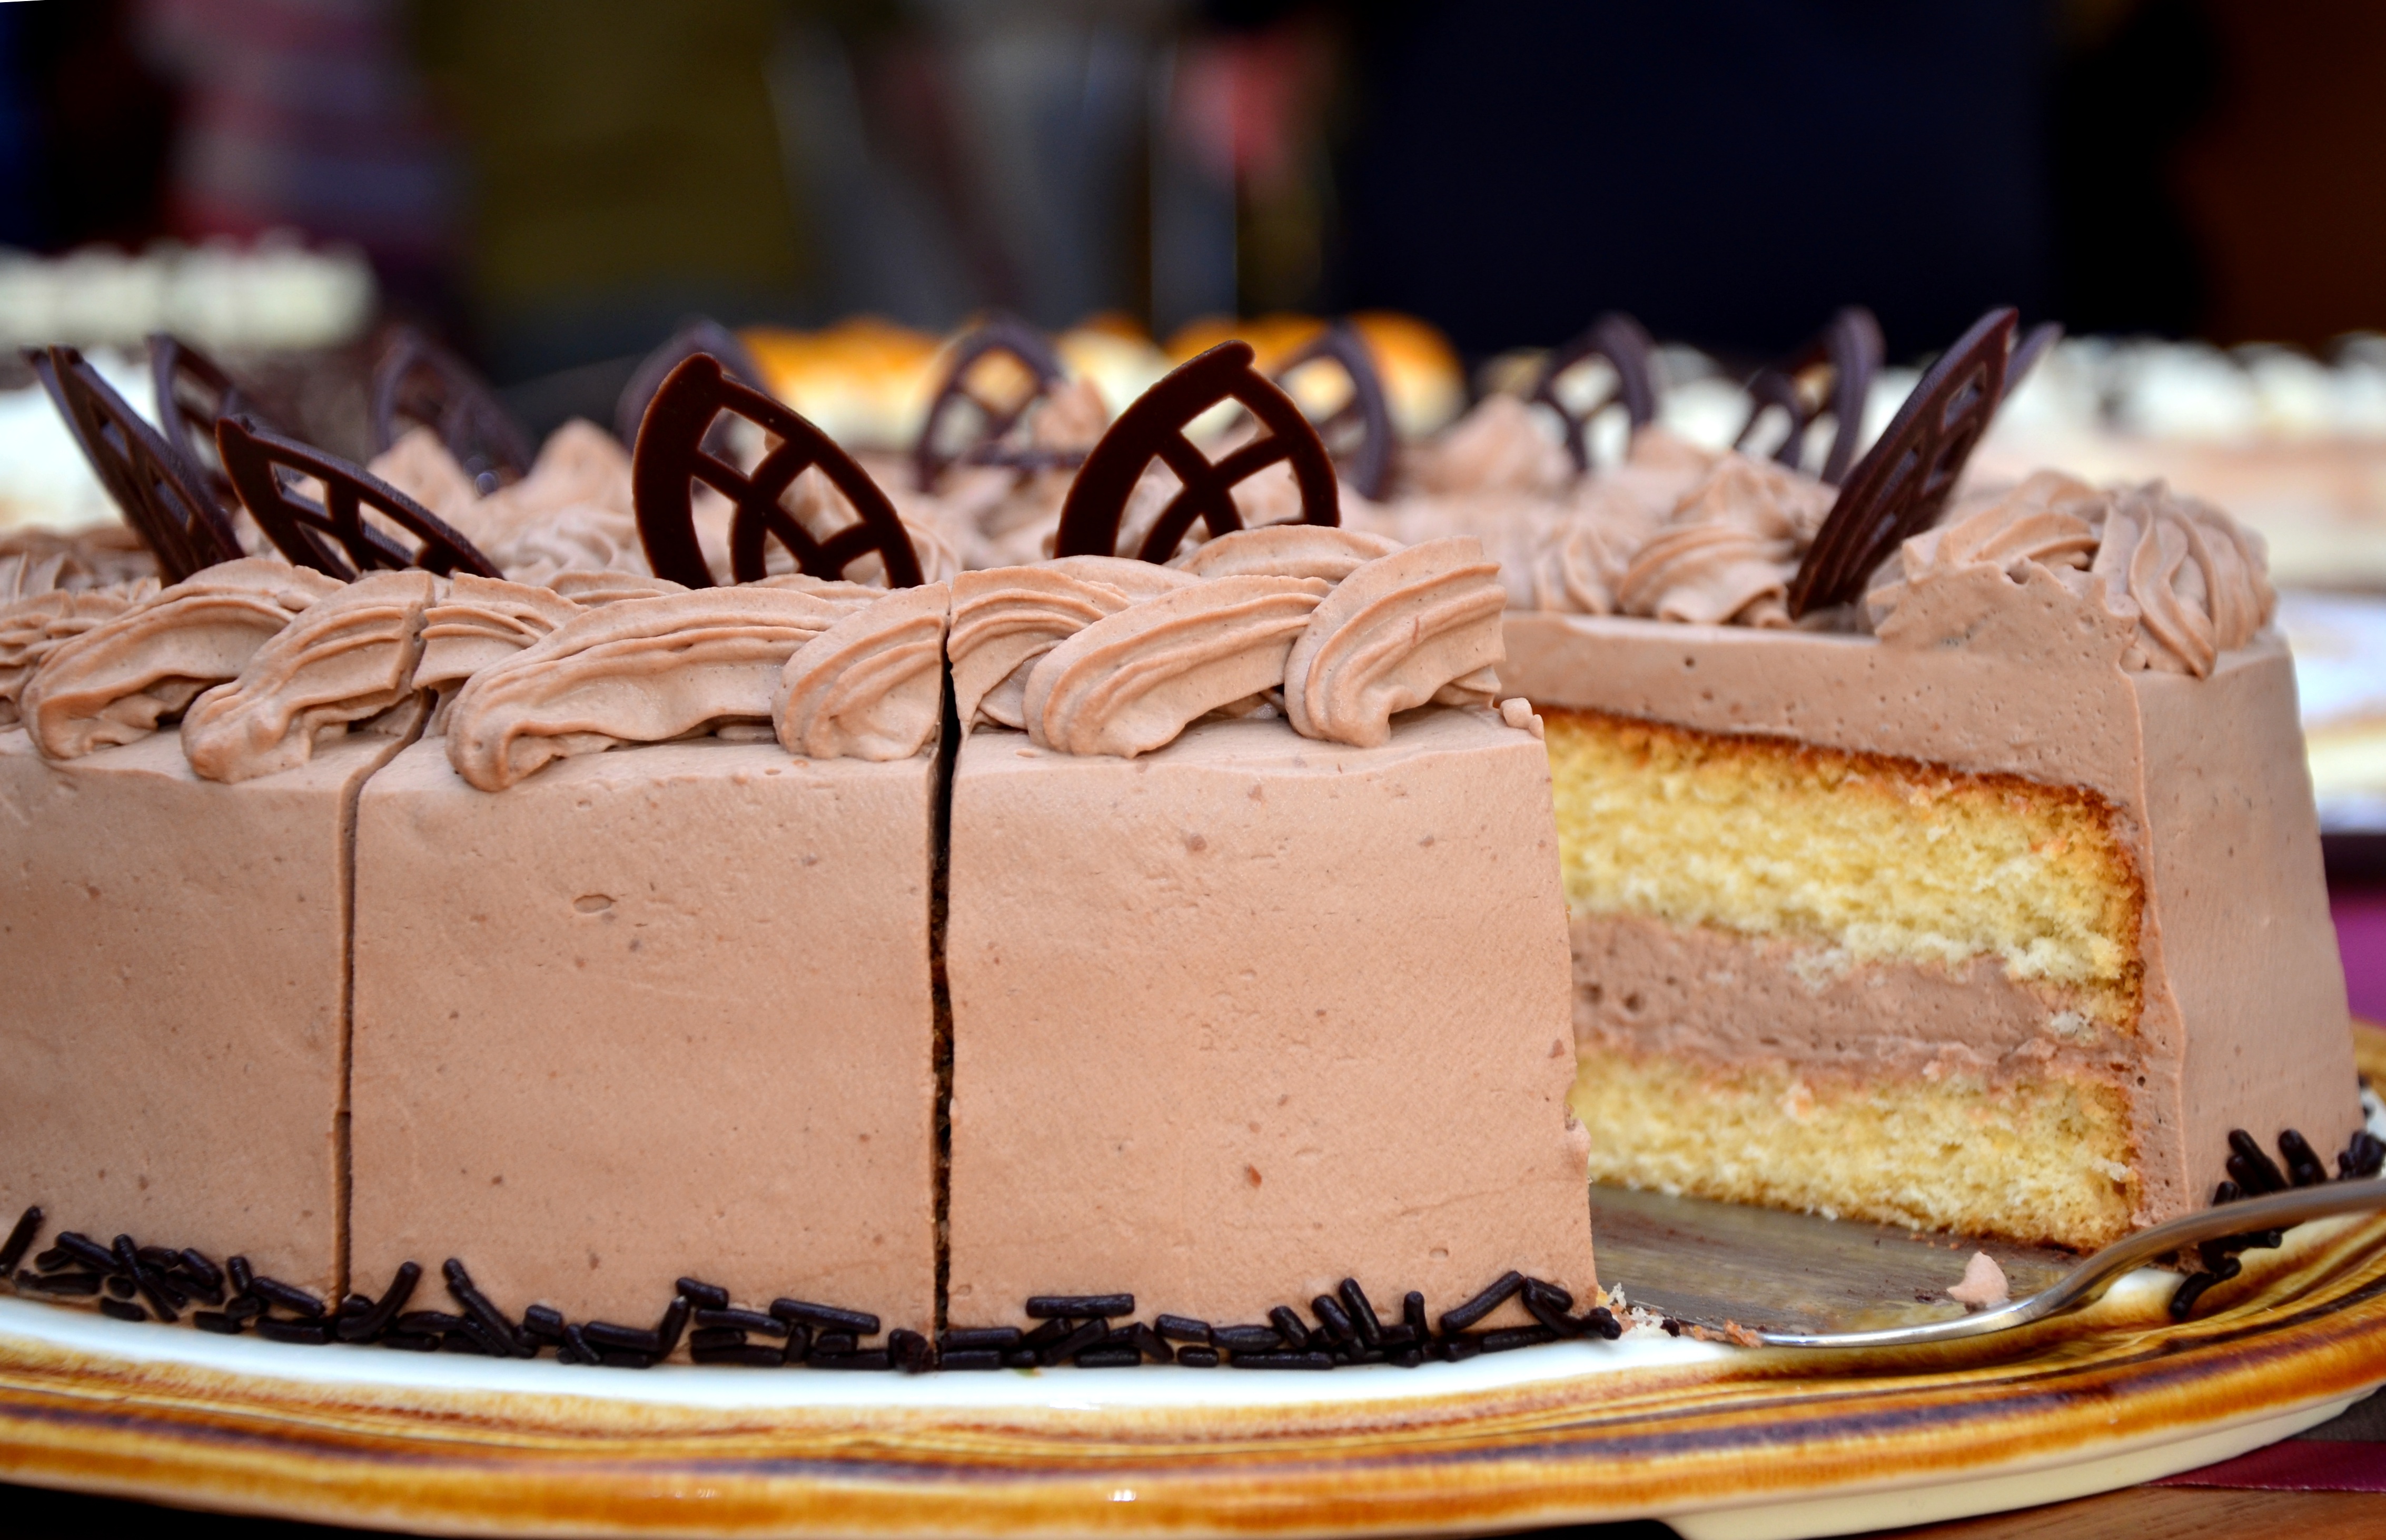 Фото еда, шоколад, выпечка, десерт, есть, торт, орнамент, торт на день рождения, шоколадное пирожное, калорийность, глазурь, чизкейк, хлебобулочные изделия, вкус, масляный крем - бесплатные картинки на Fonwall